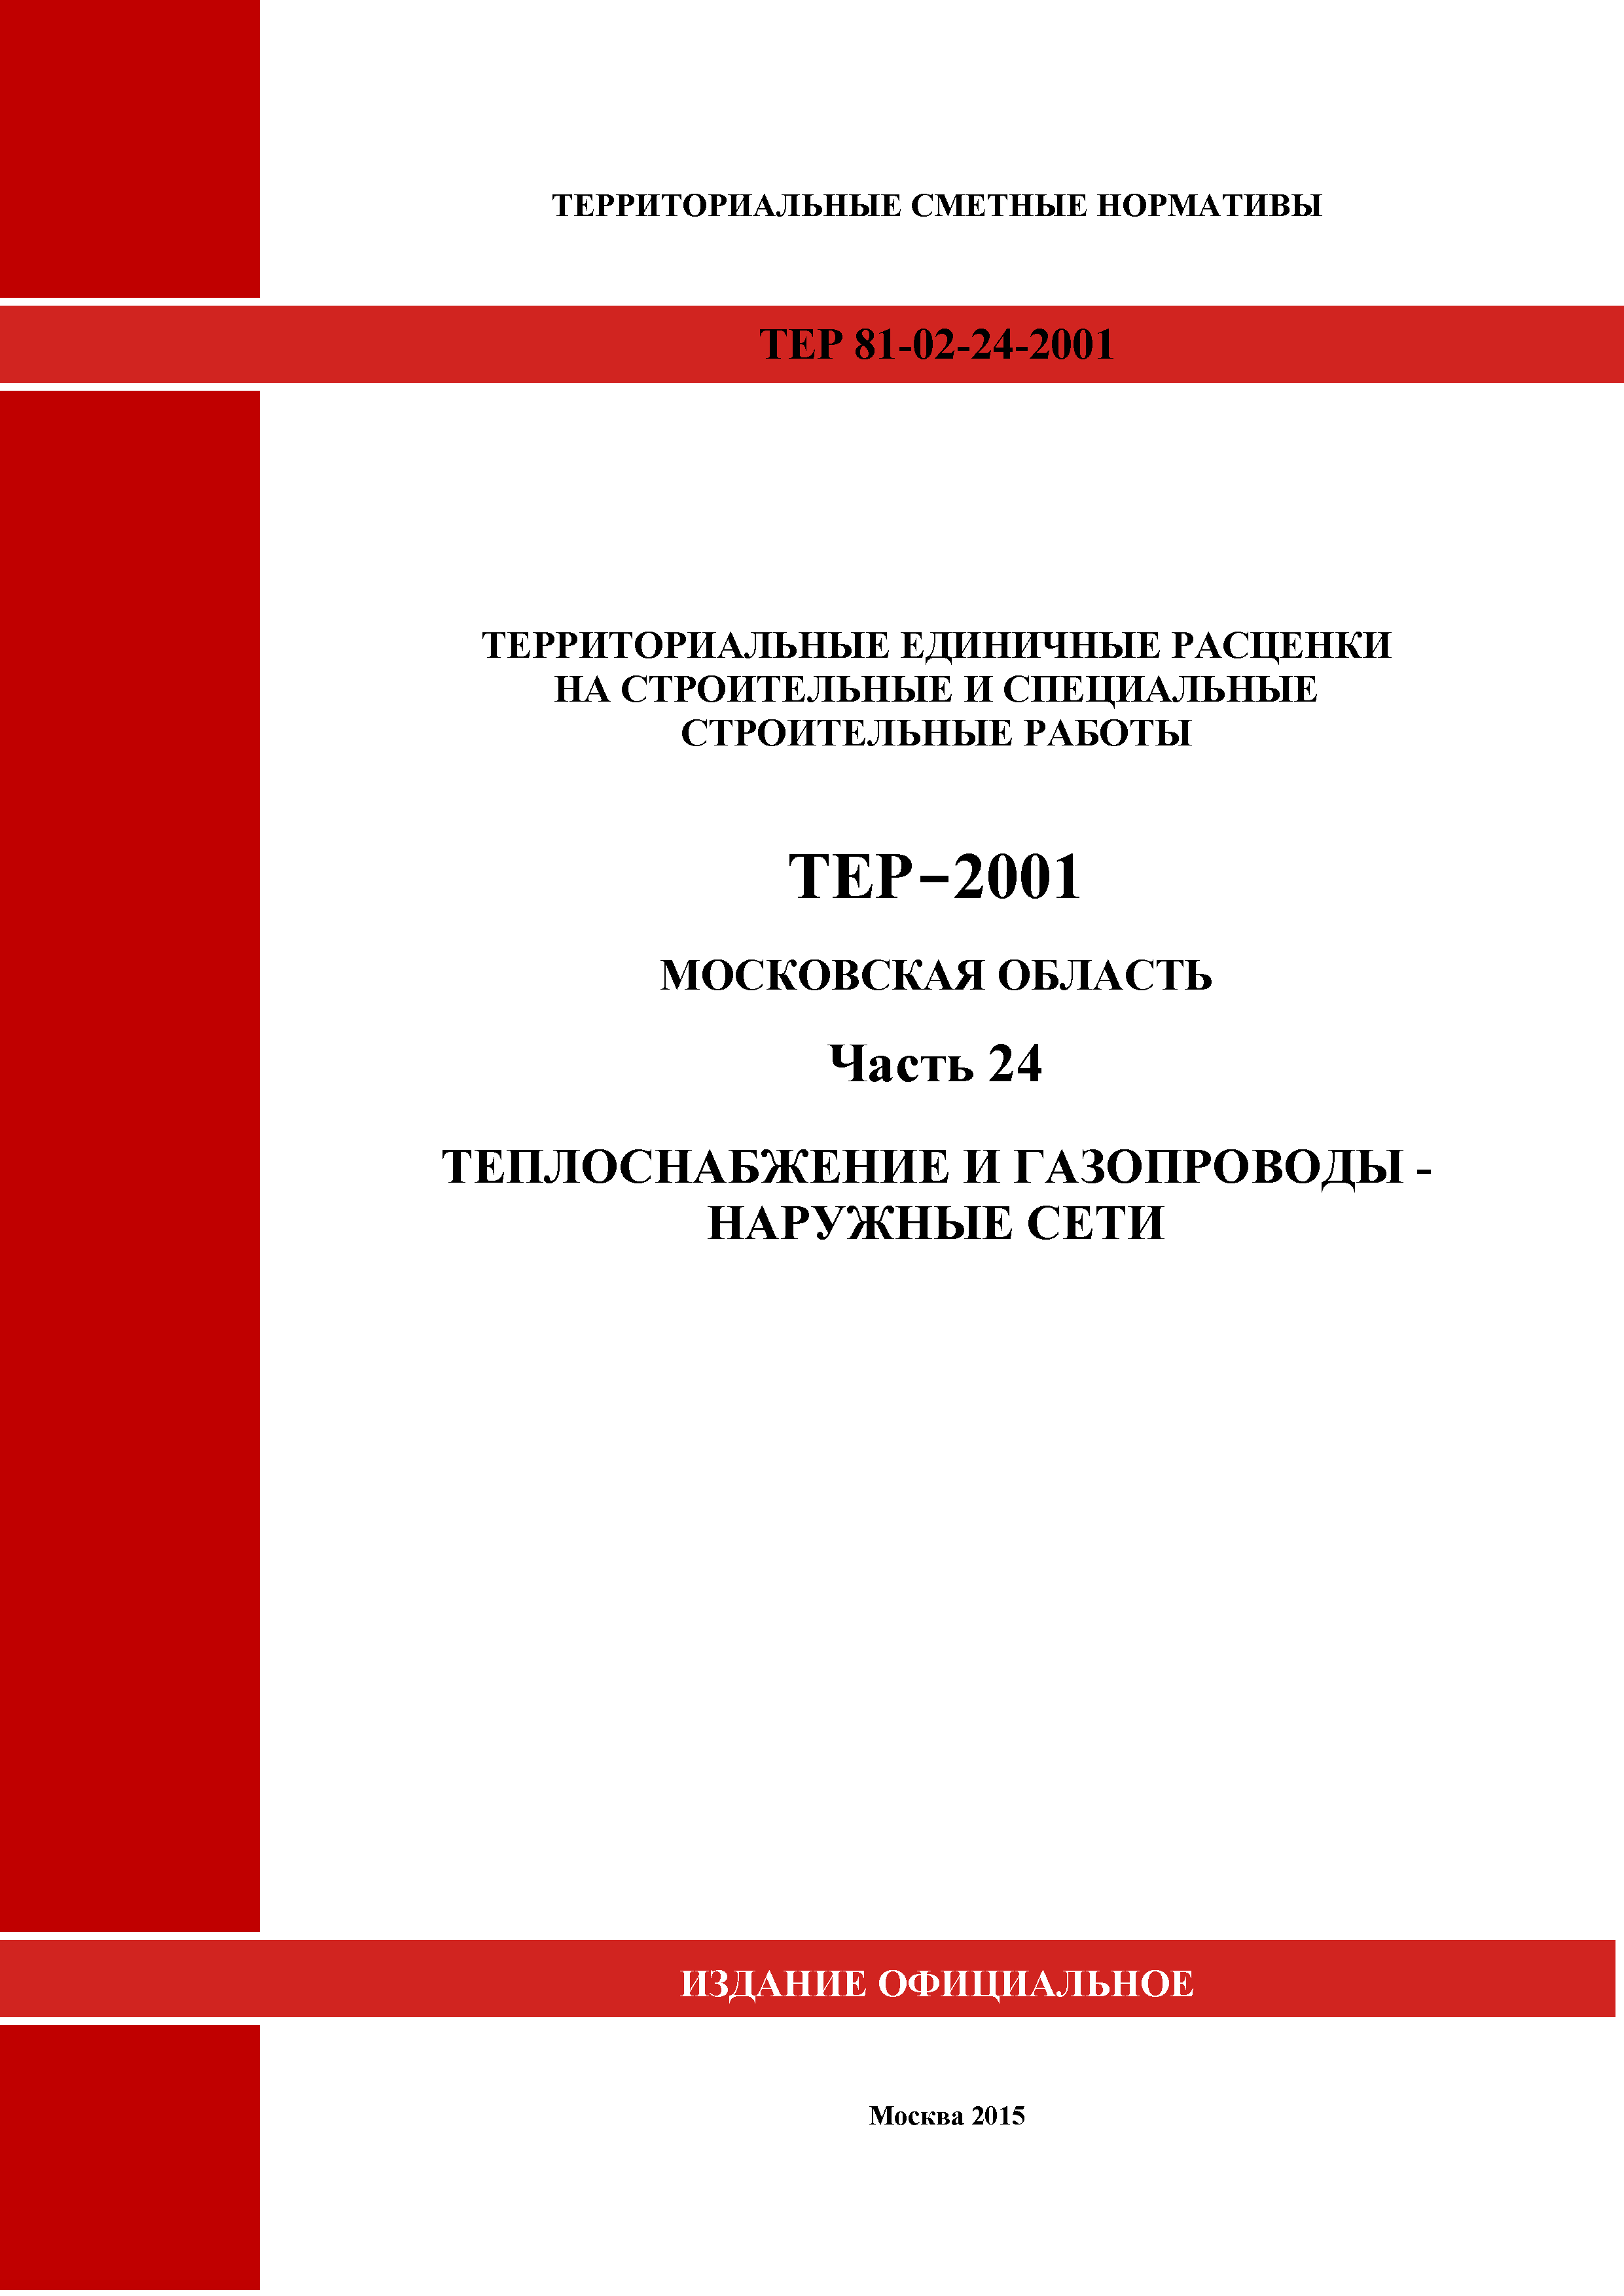 ТЕР 24-2001 Московской области